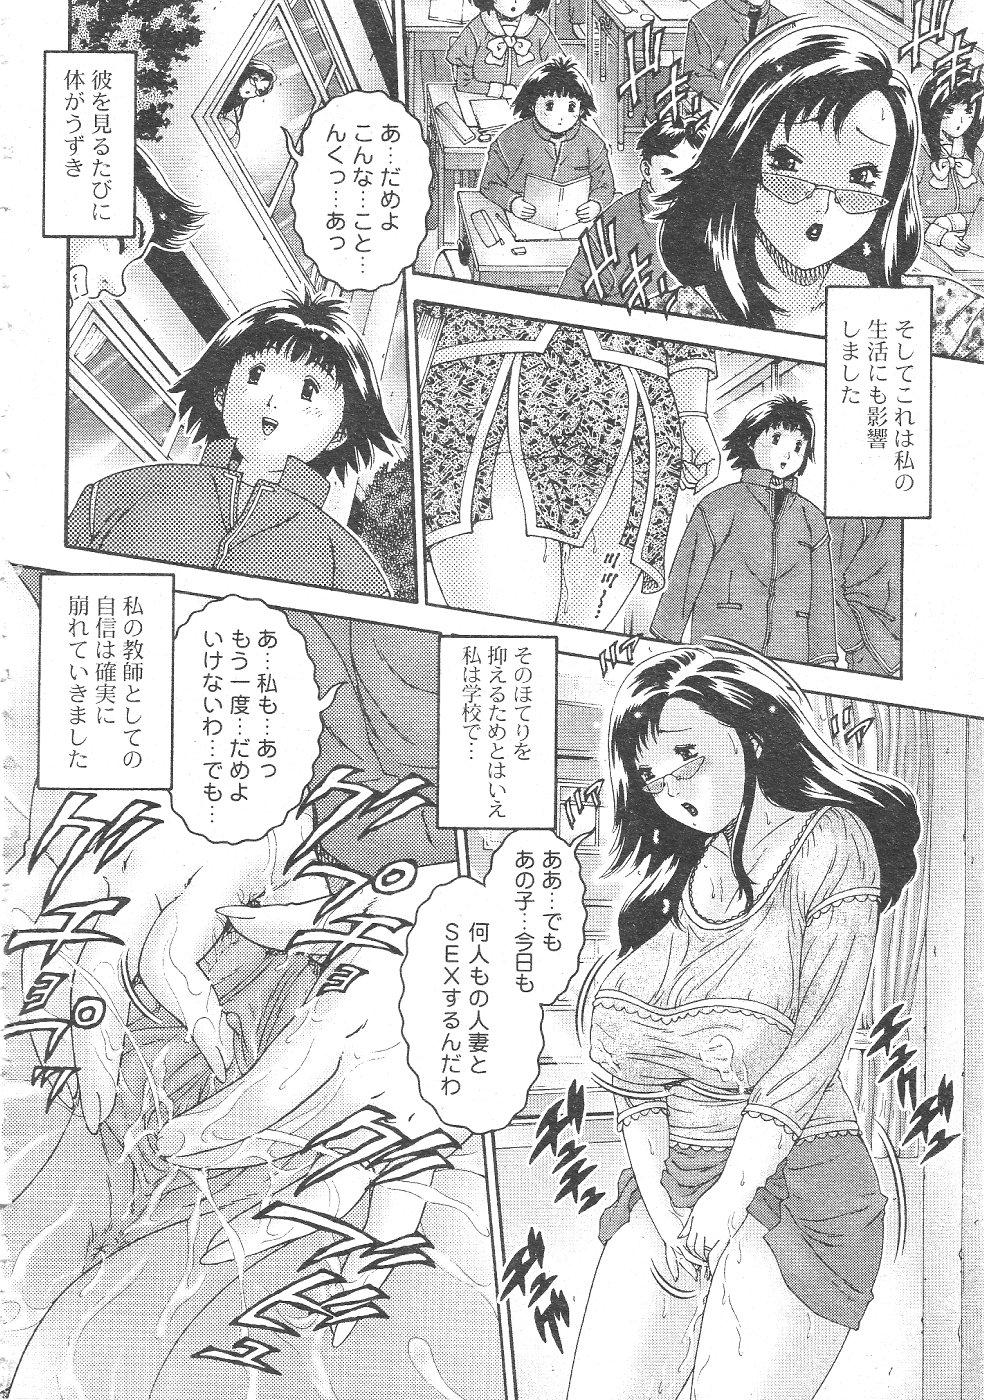 Gekkan Comic Muga 2004-06 Vol.10 189